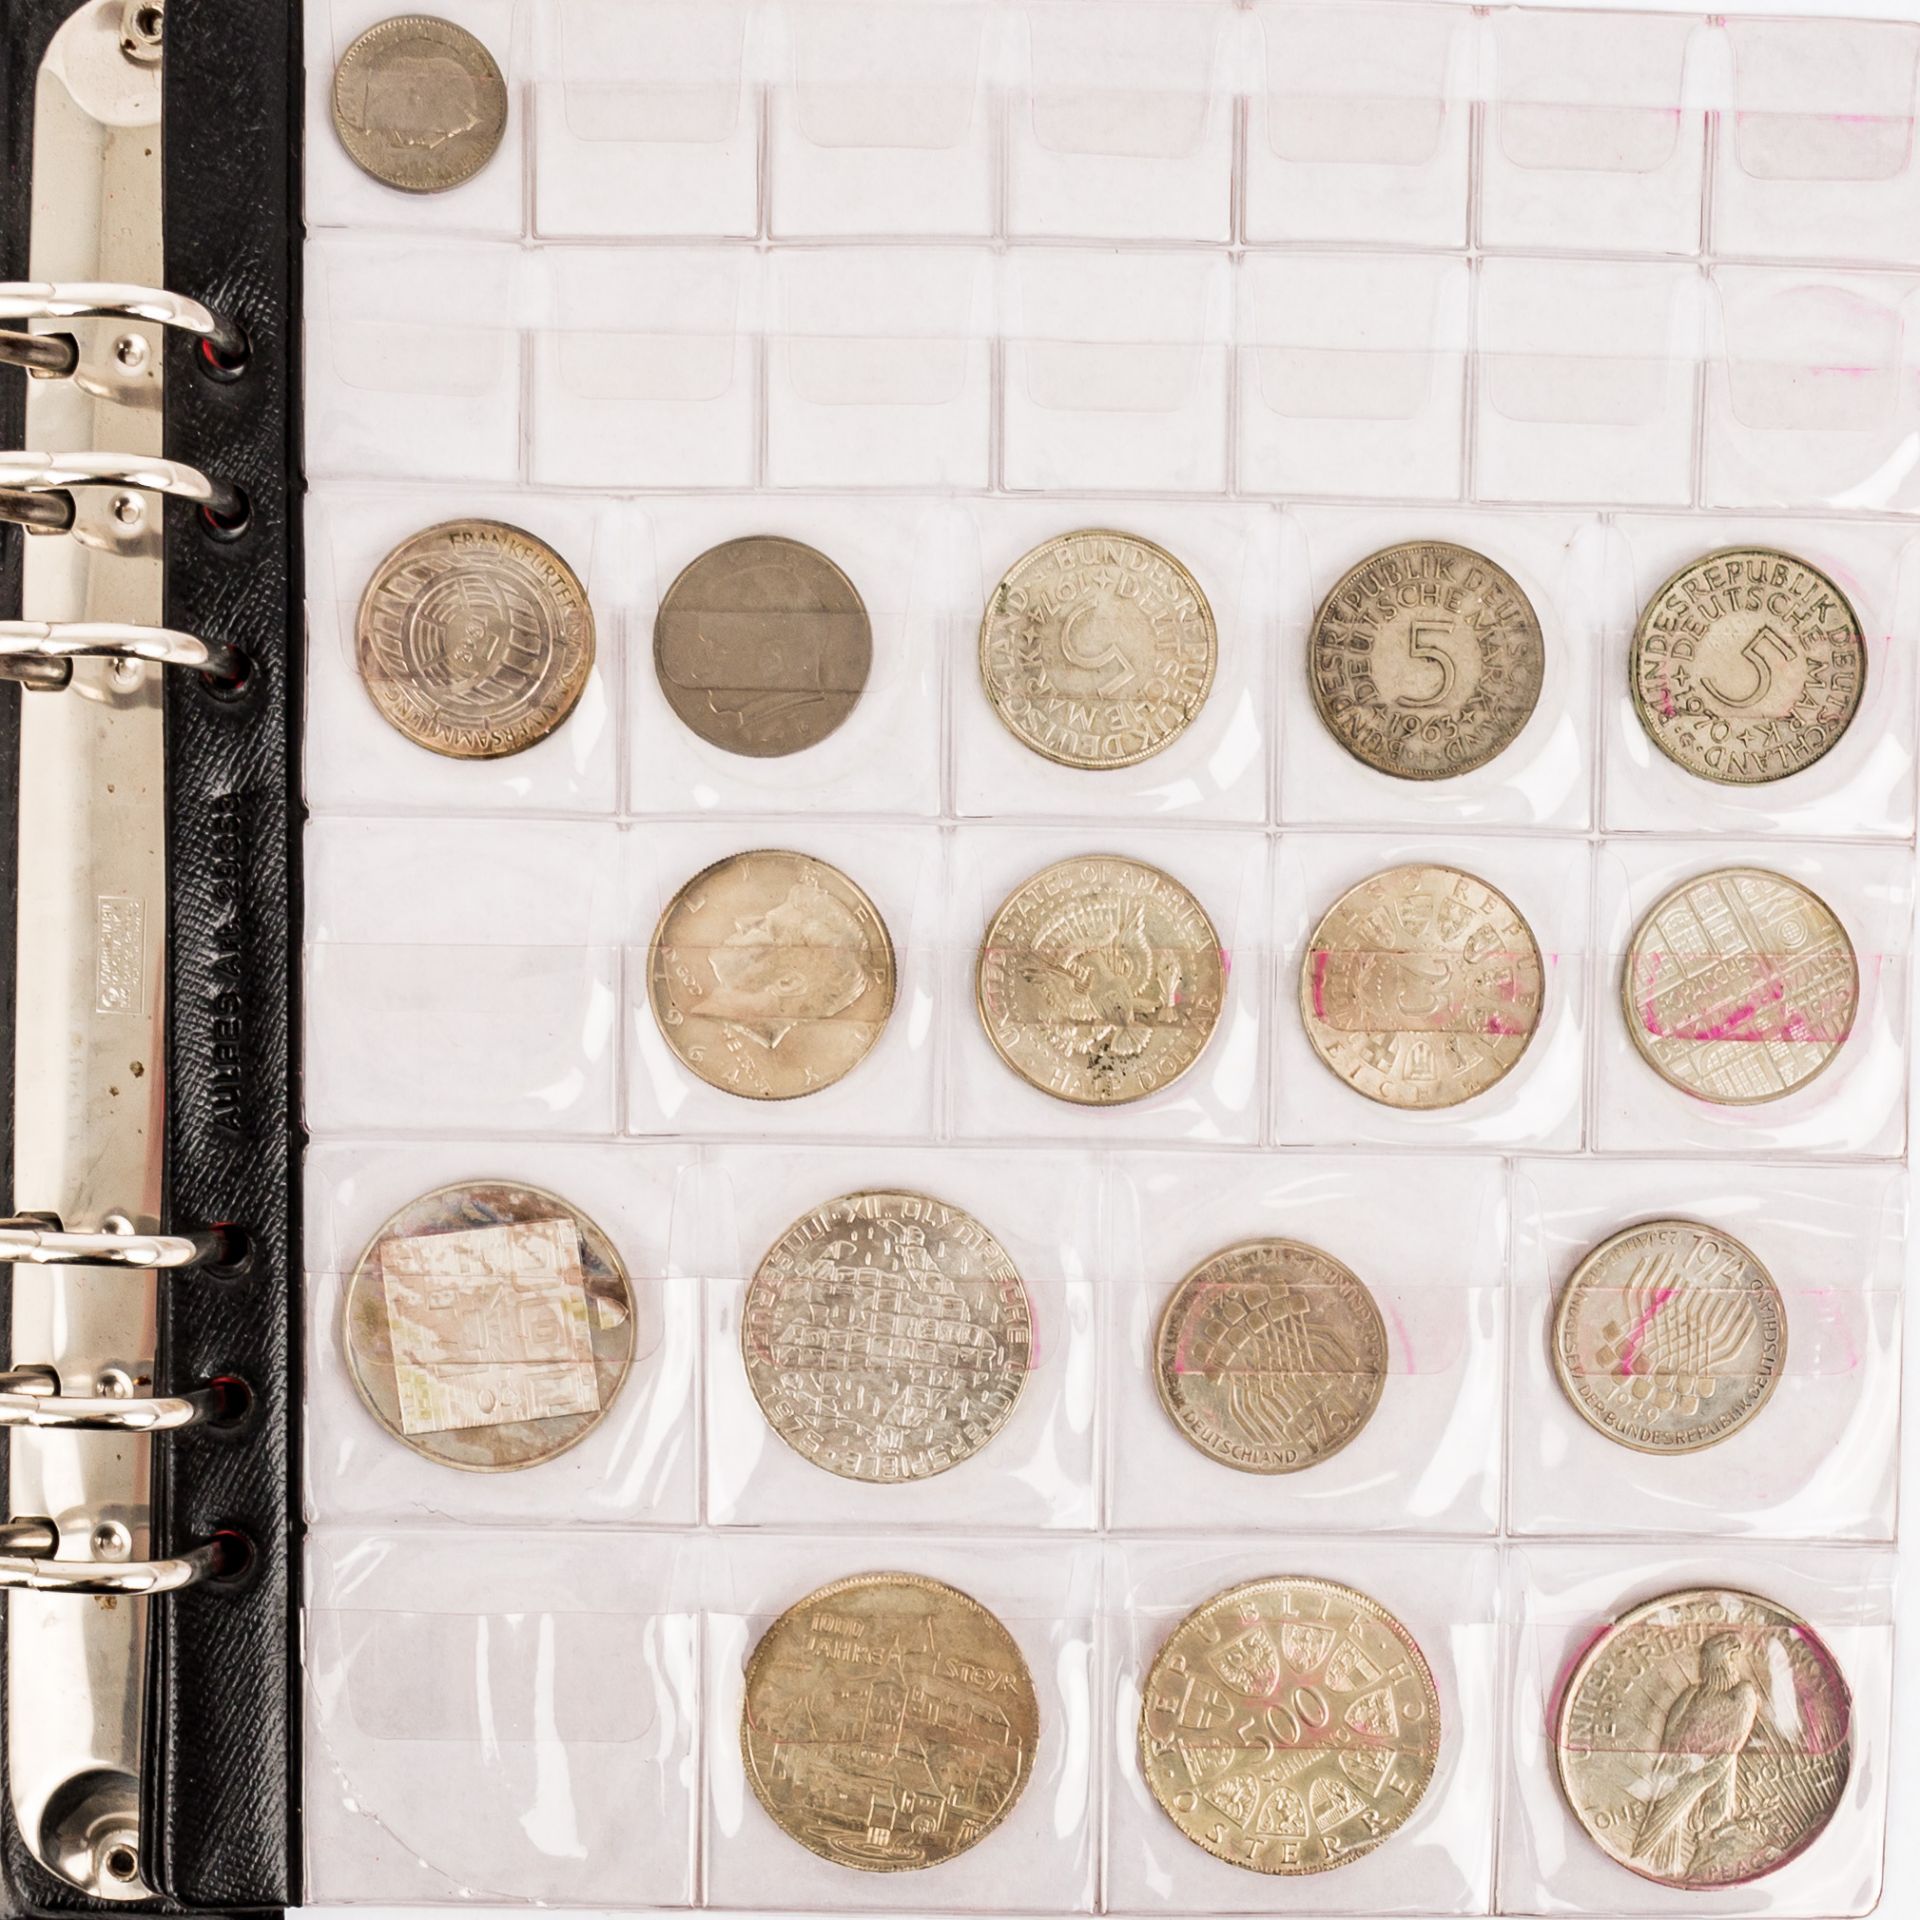 Münzen und Medaillen, BRD Gedenkmünzen,Österreich Schillinge, Medaillen 40 Jahre BRD fast nahezu 500 - Bild 12 aus 12